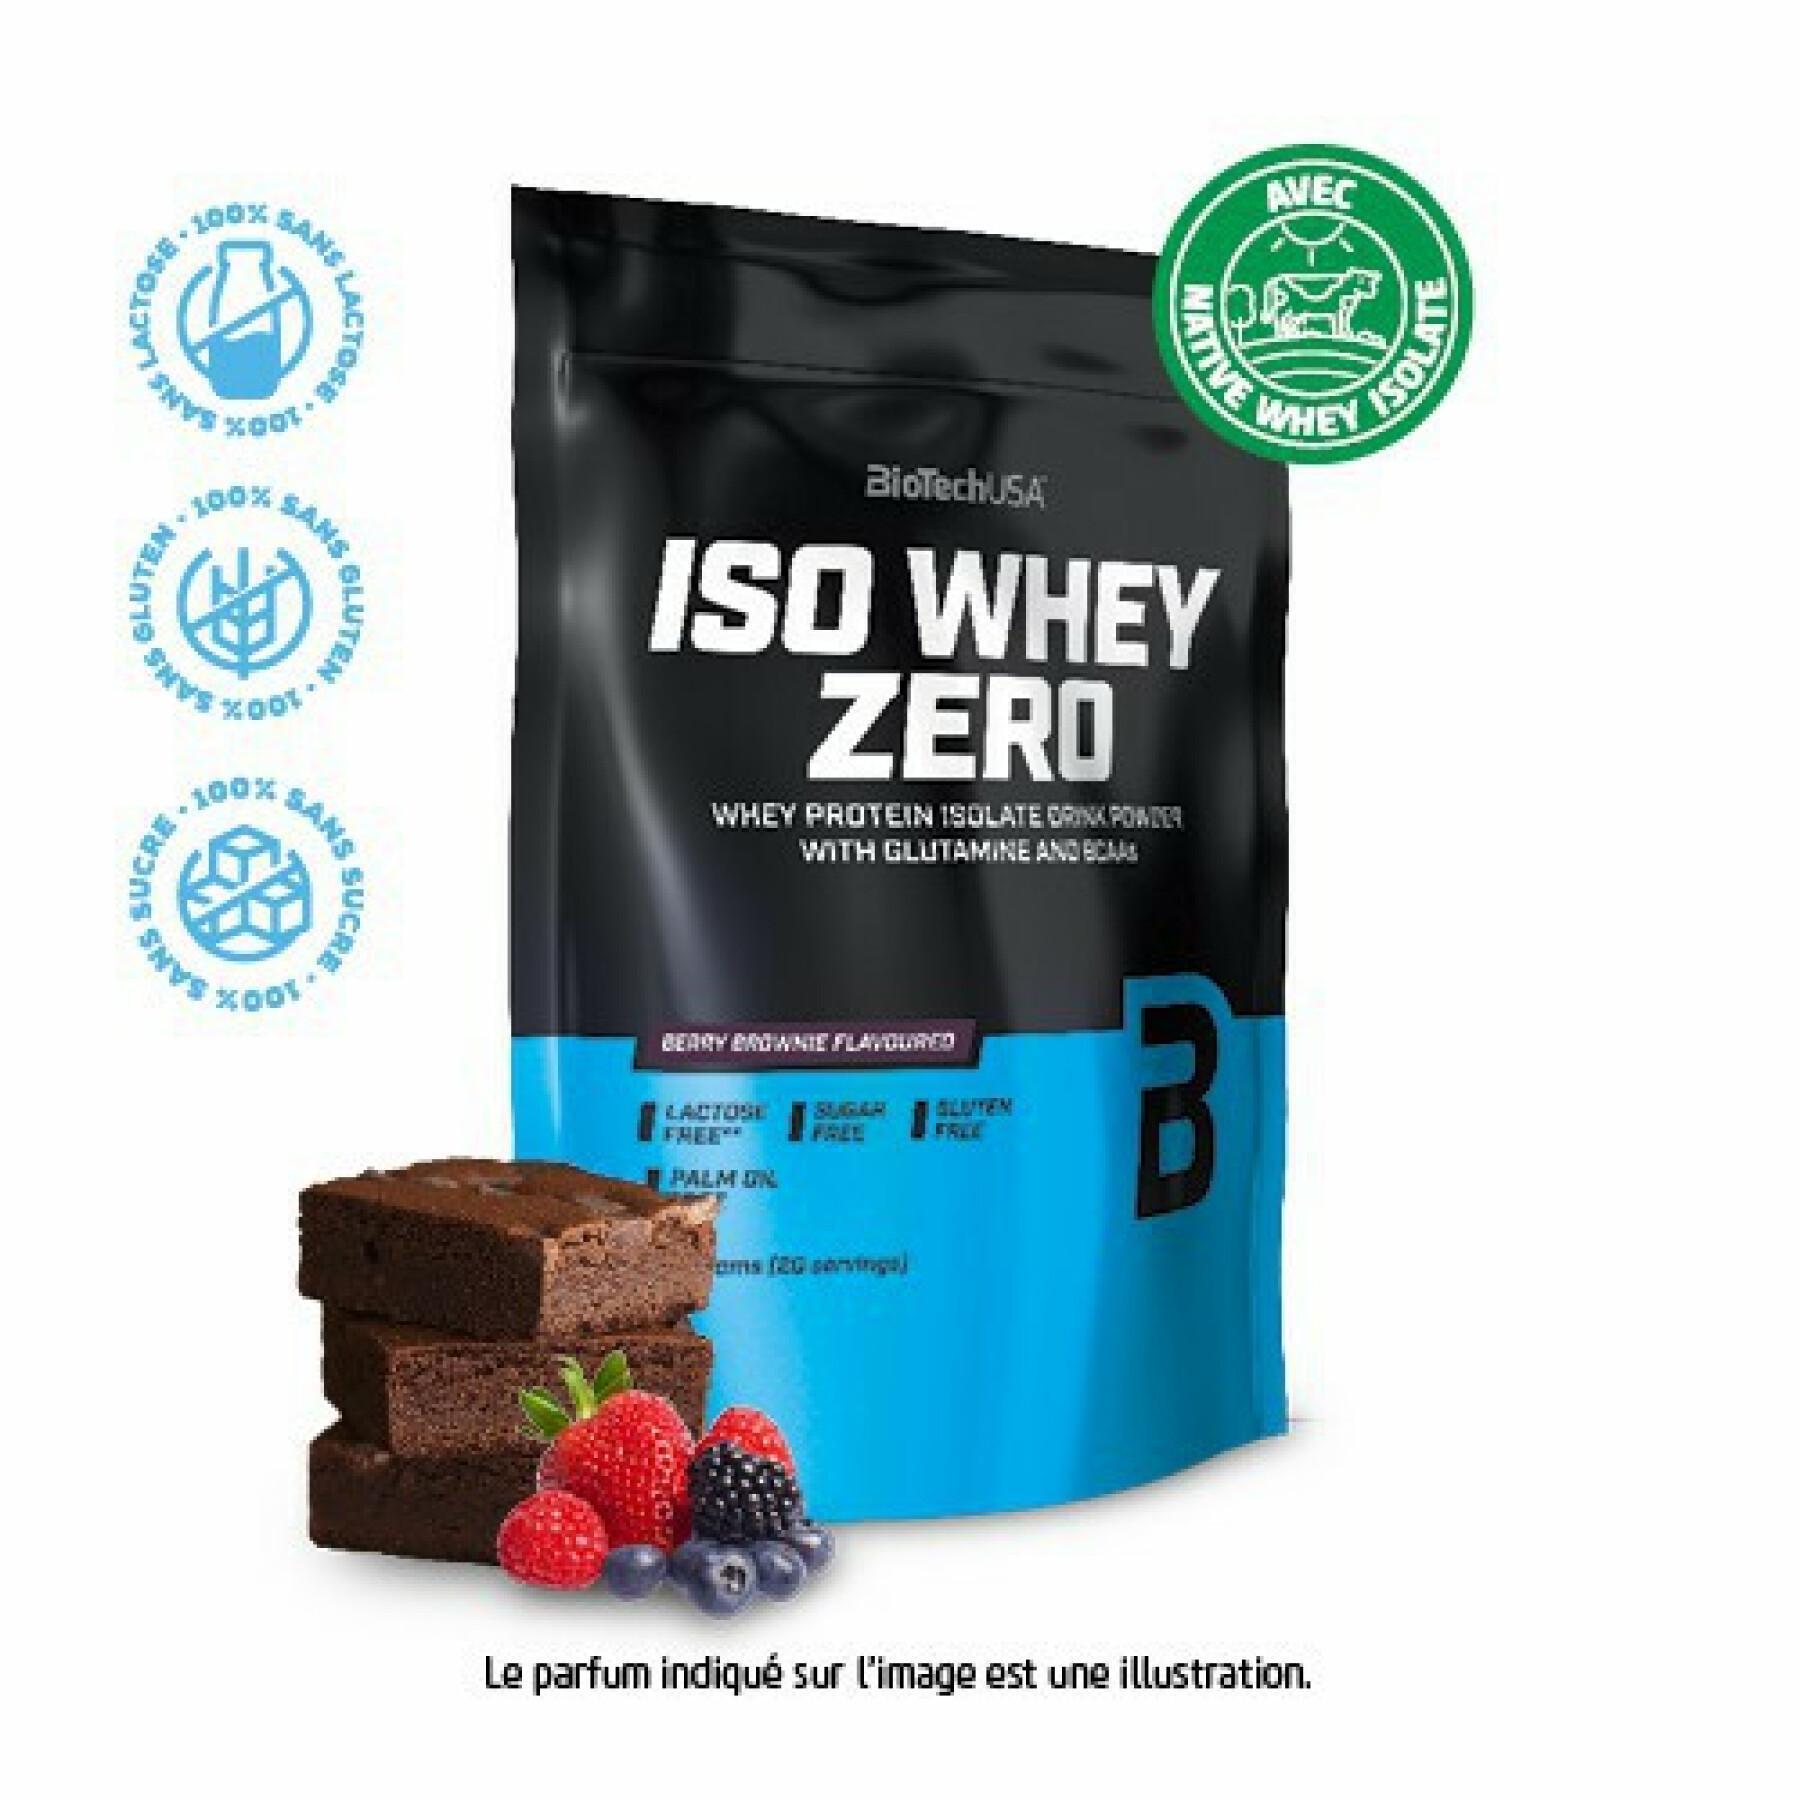 Confezione da 10 sacchetti di proteine Biotech USA iso whey zero lactose free - Brownie ai frutti rossi - 500g